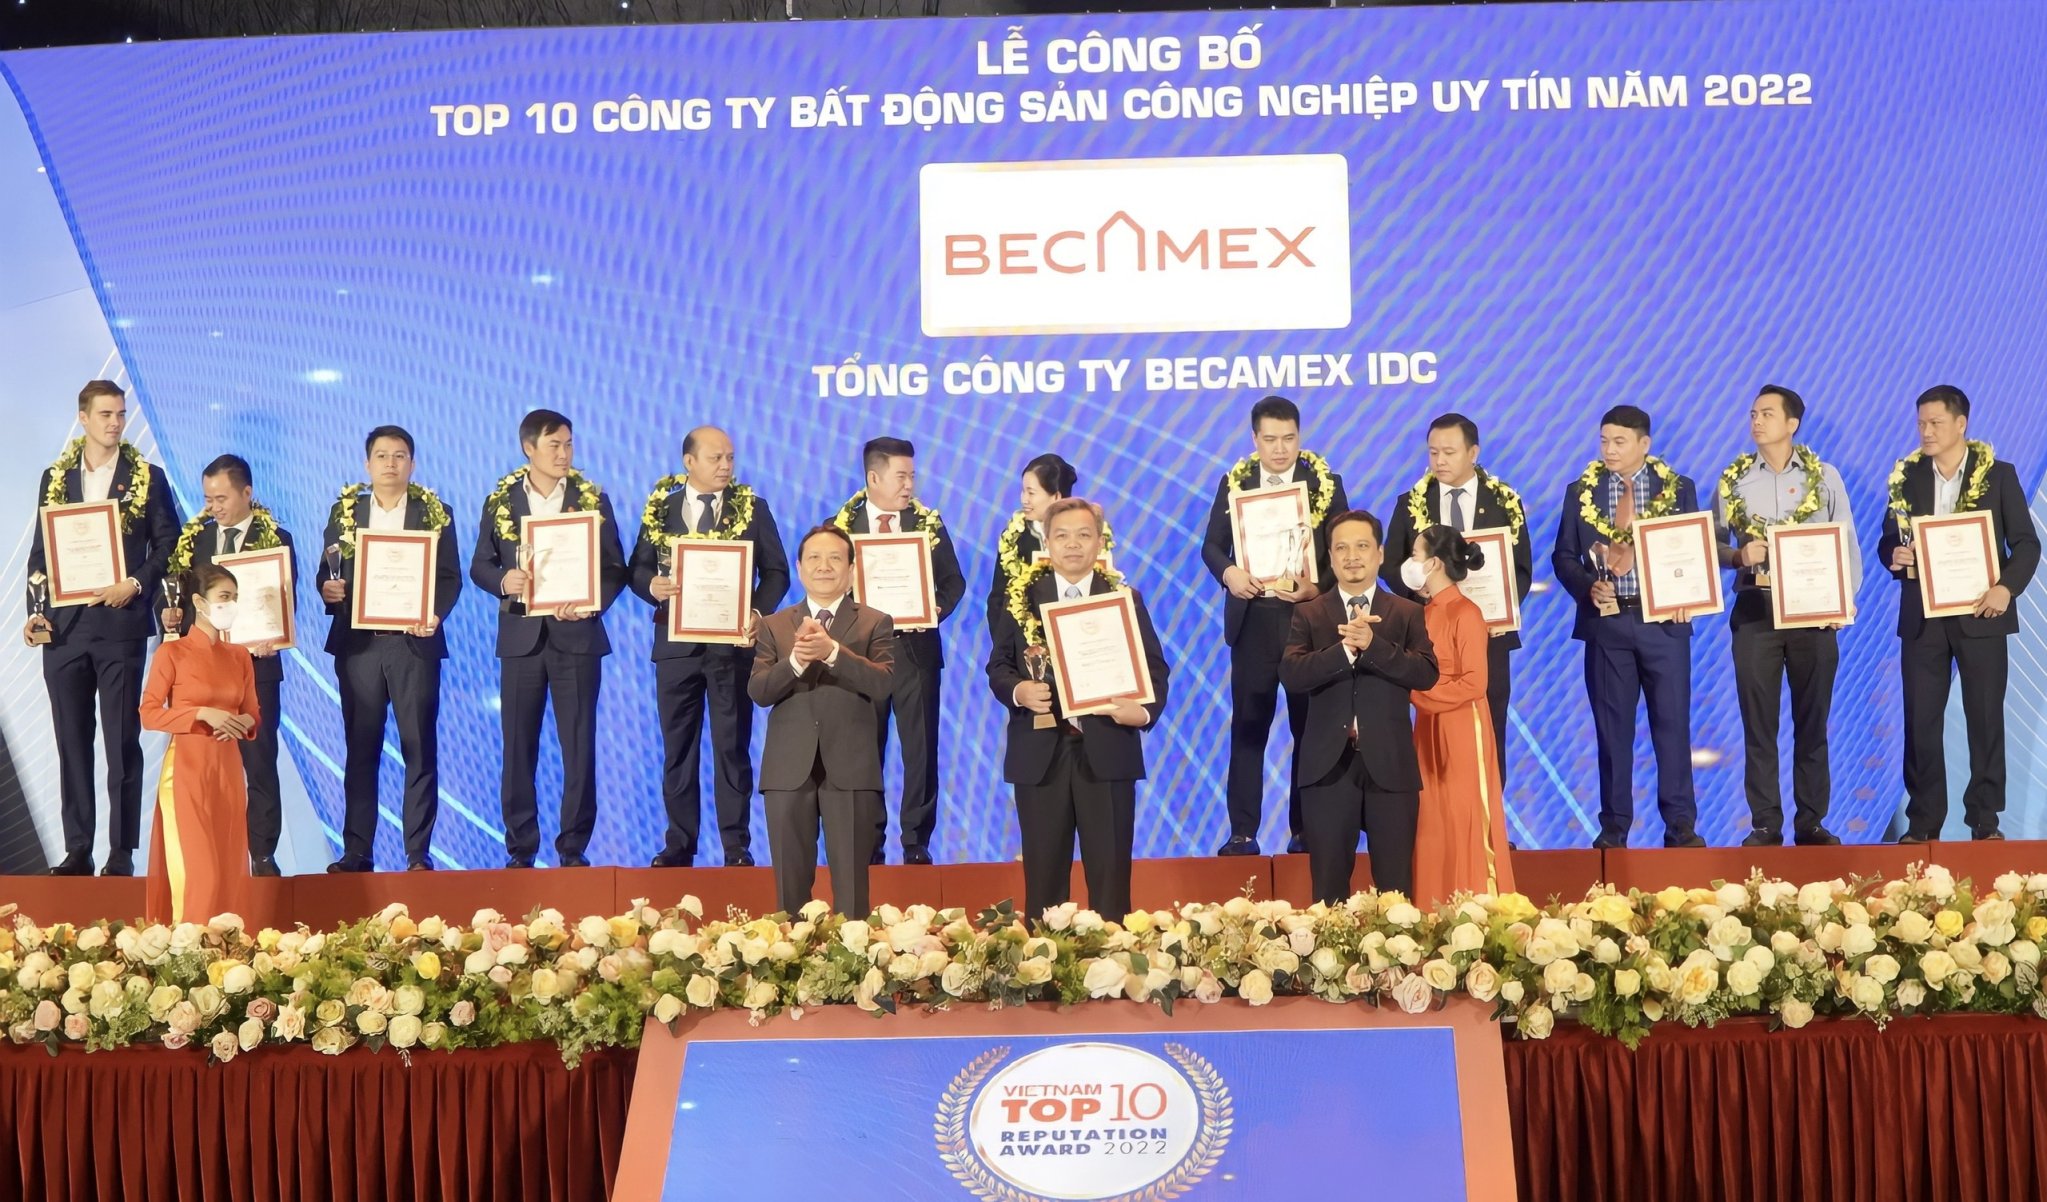 Vì sao Becamex IDC liên tiếp đạt danh hiệu Công ty Bất động sản công nghiệp uy tín nhất